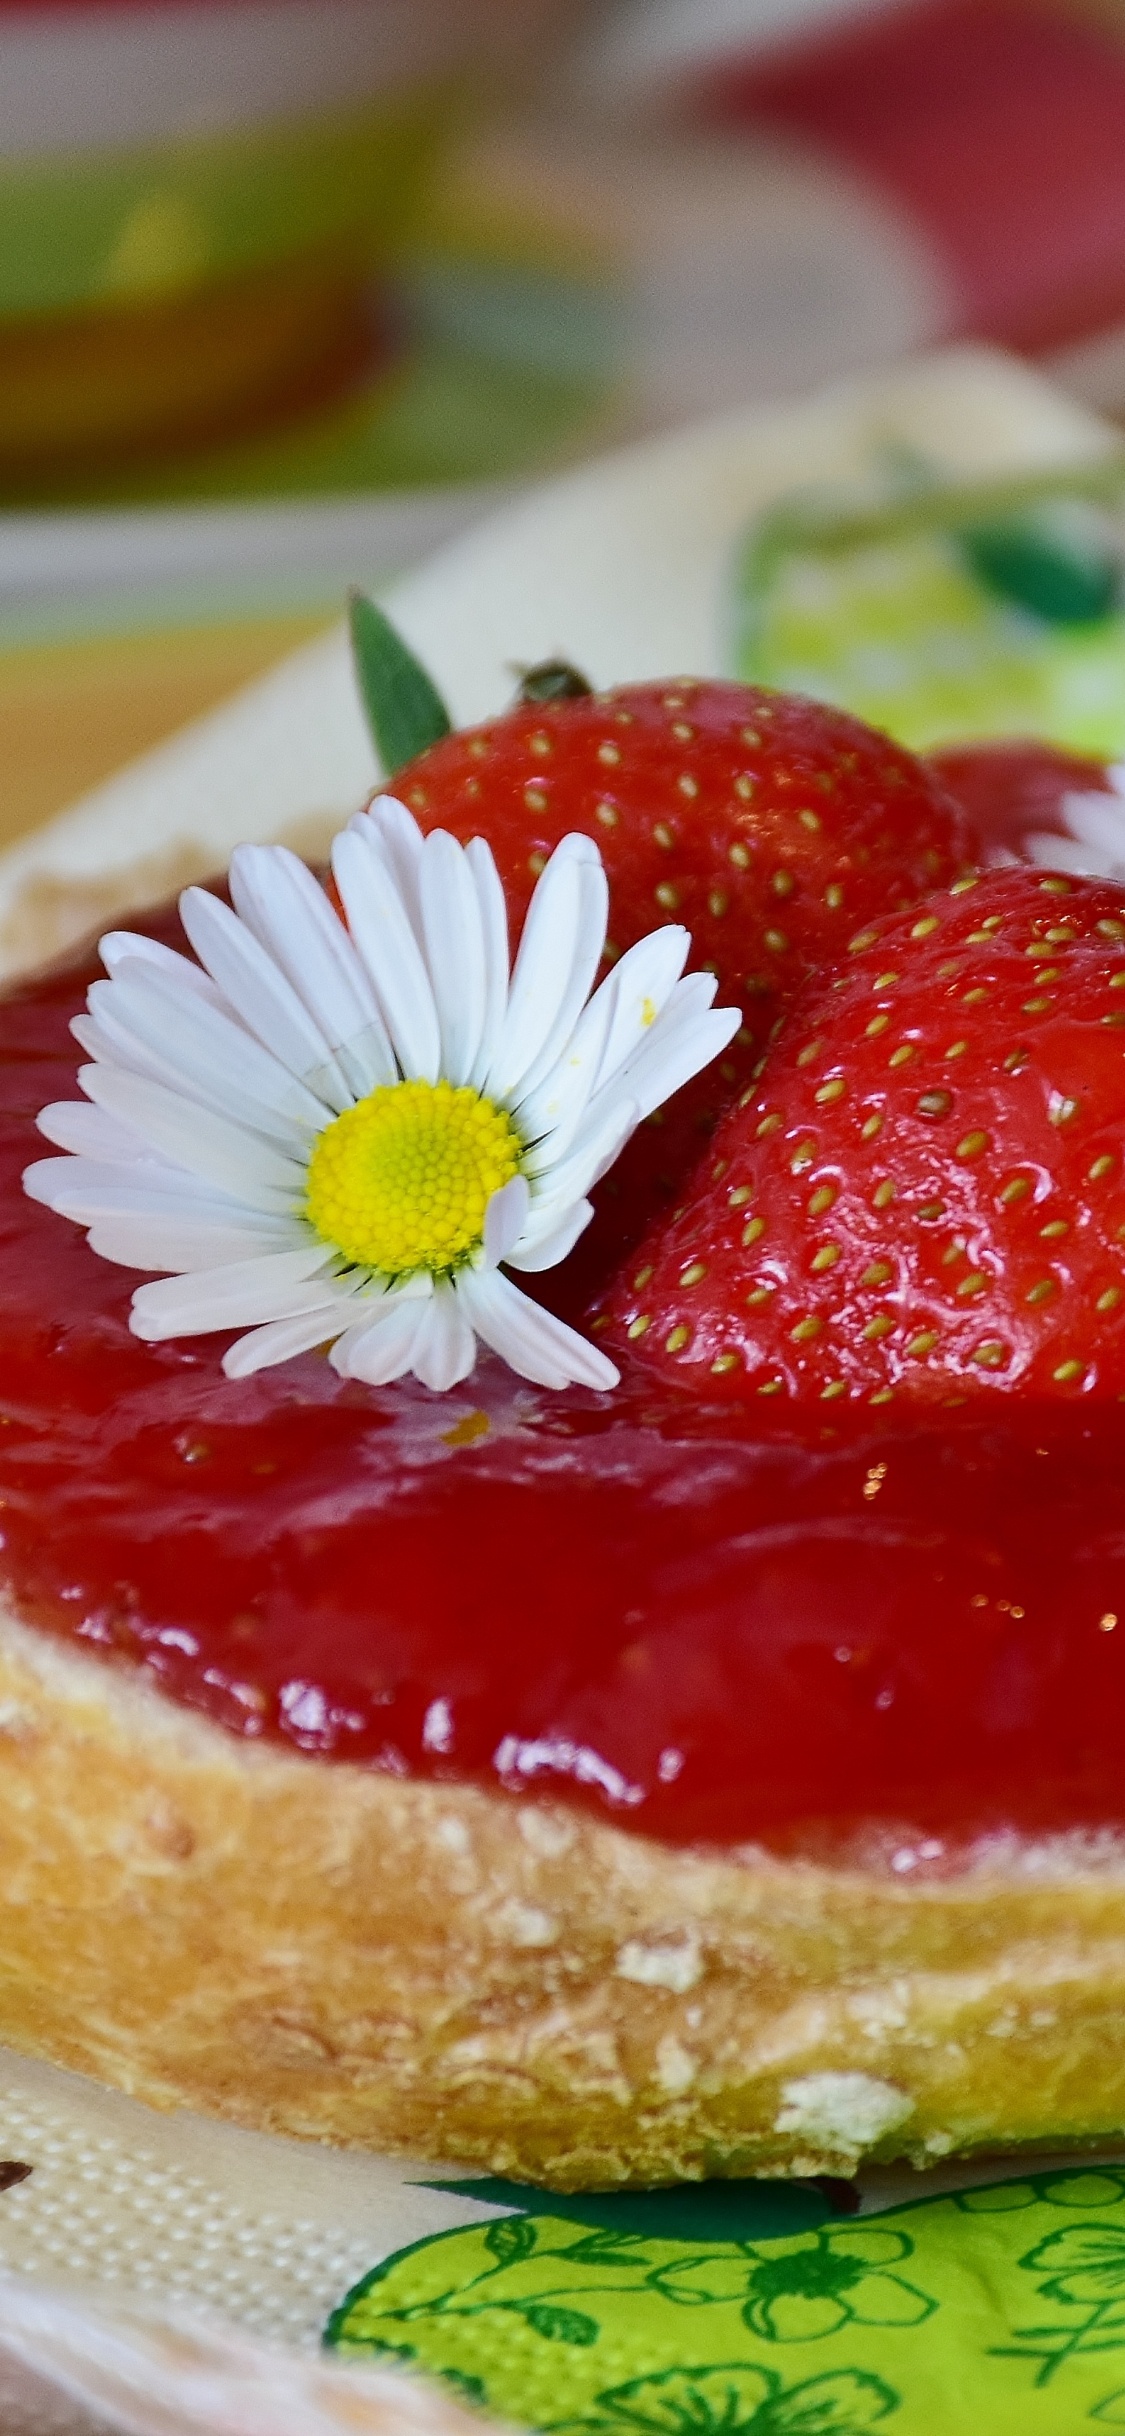 甜点, 食品, 成分, 甜头, 草莓 壁纸 1125x2436 允许